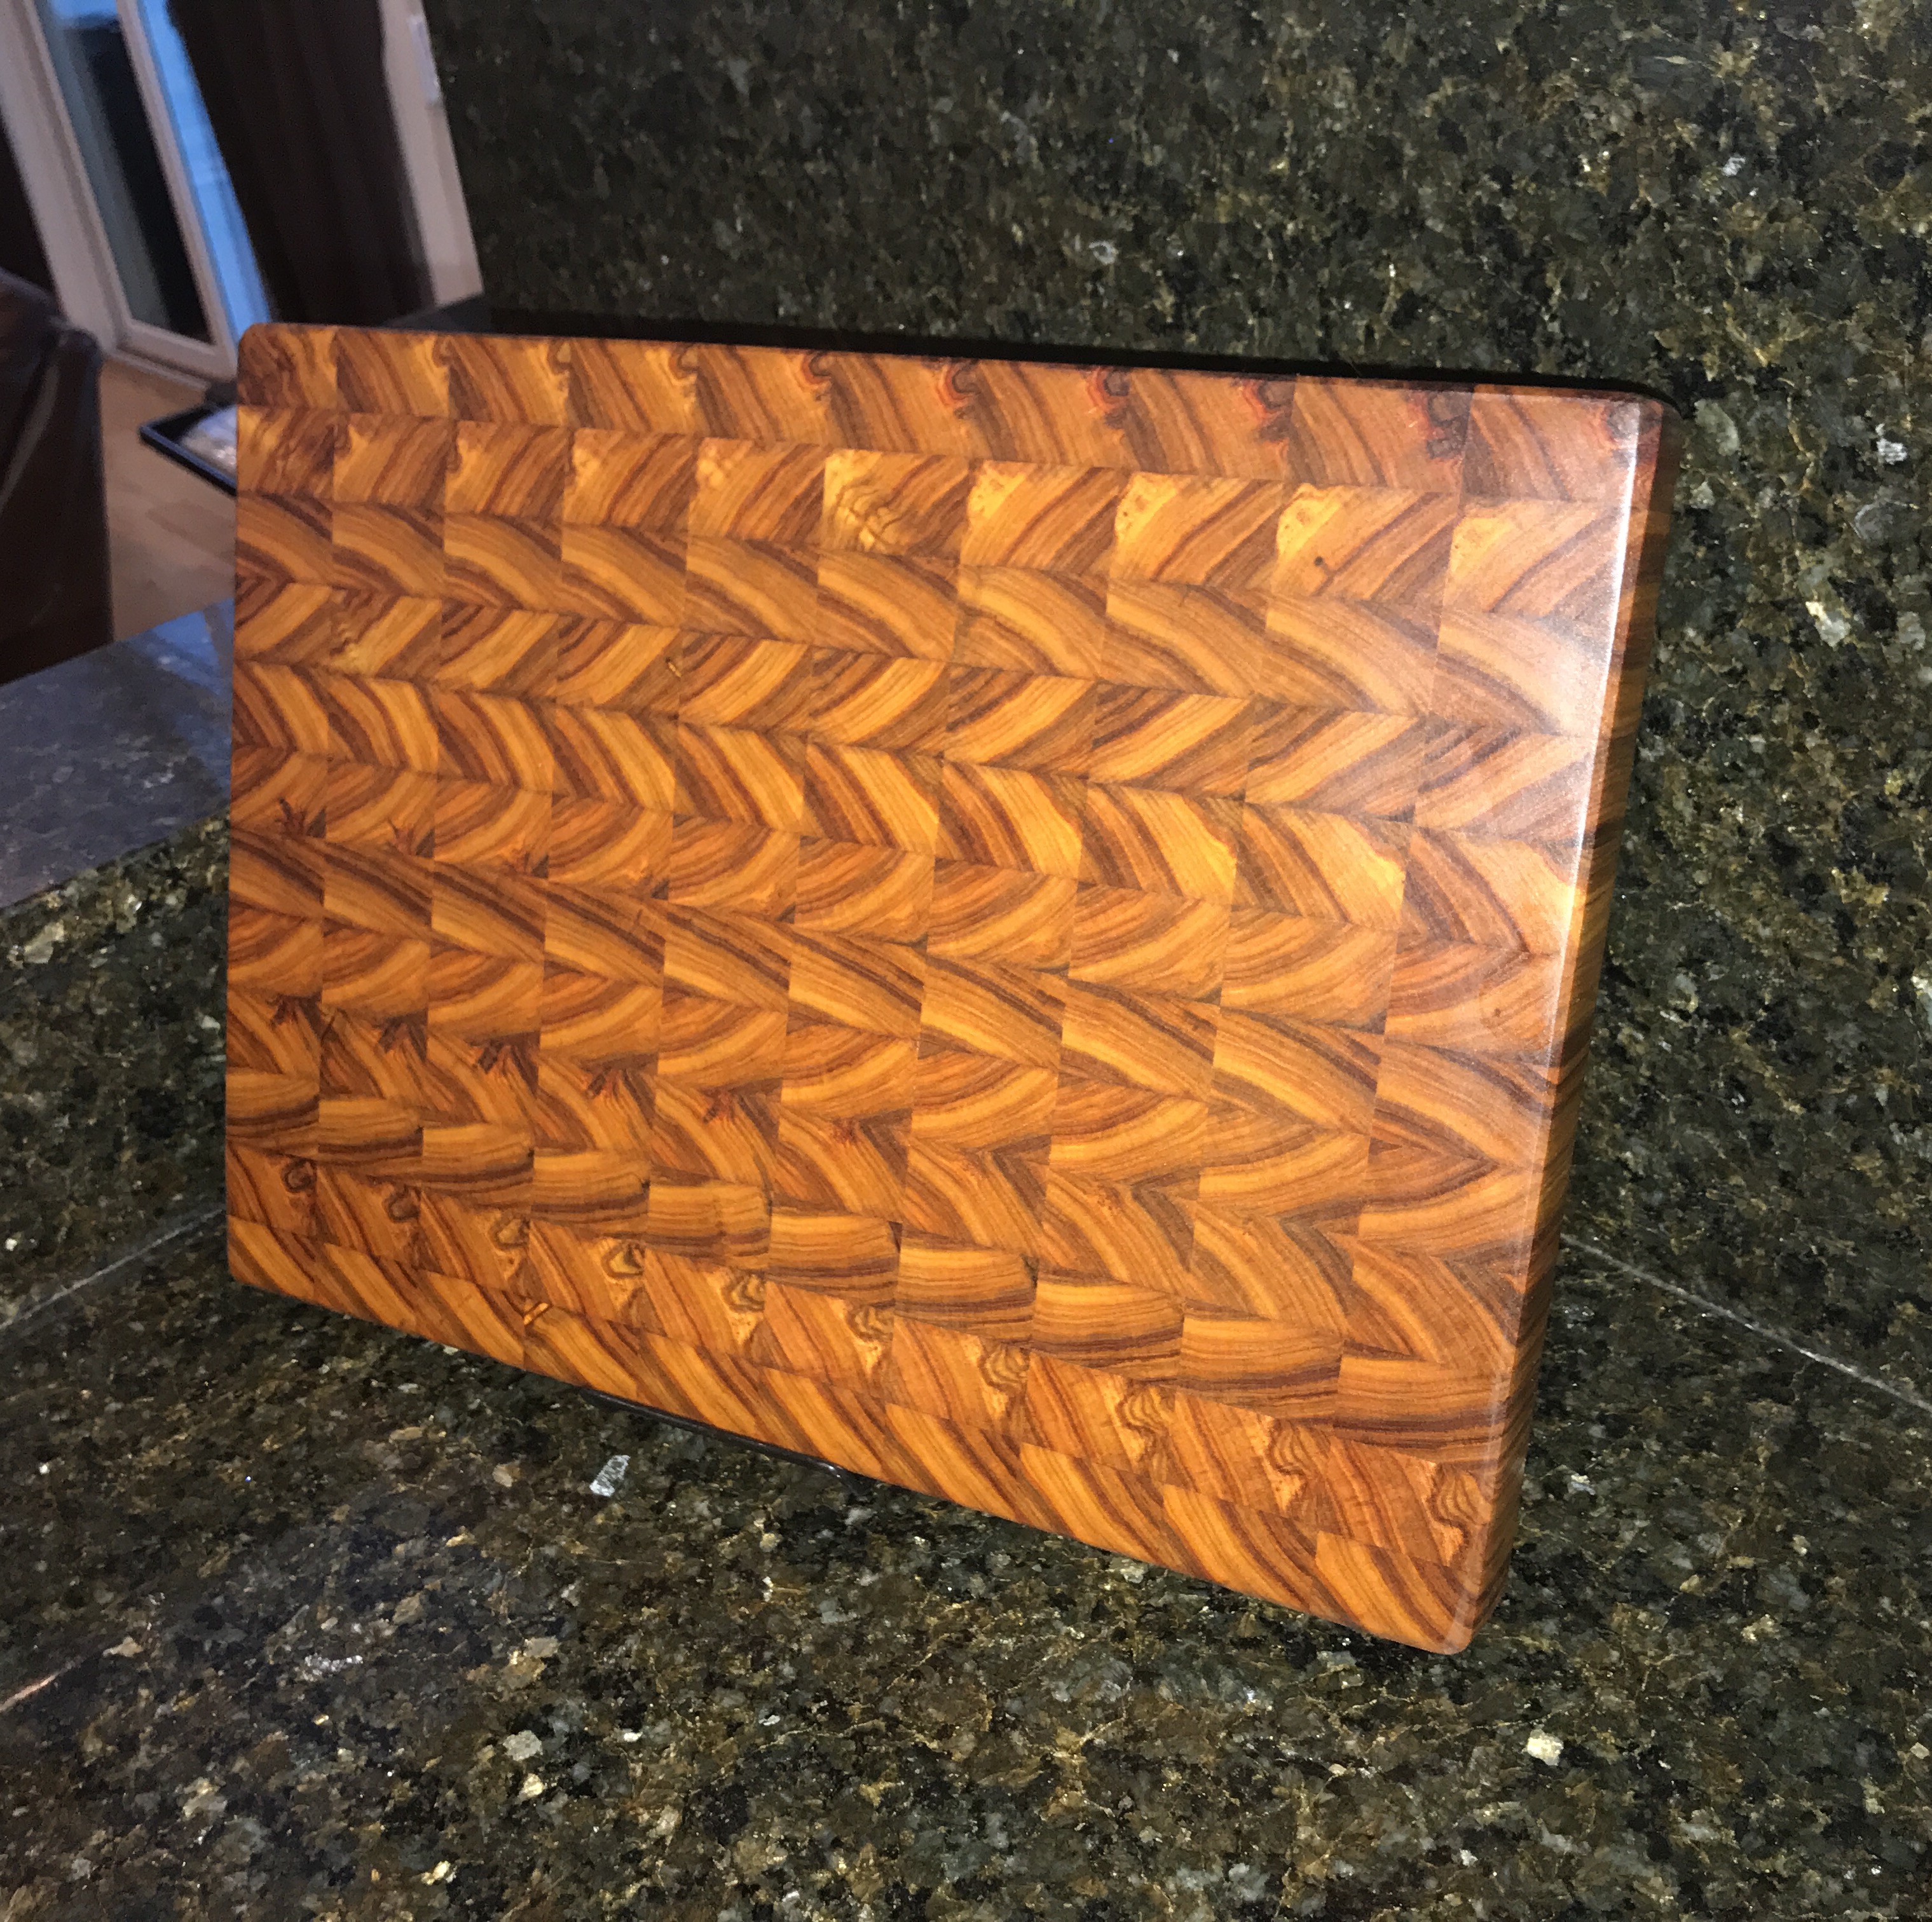 Patterned Wooden Board